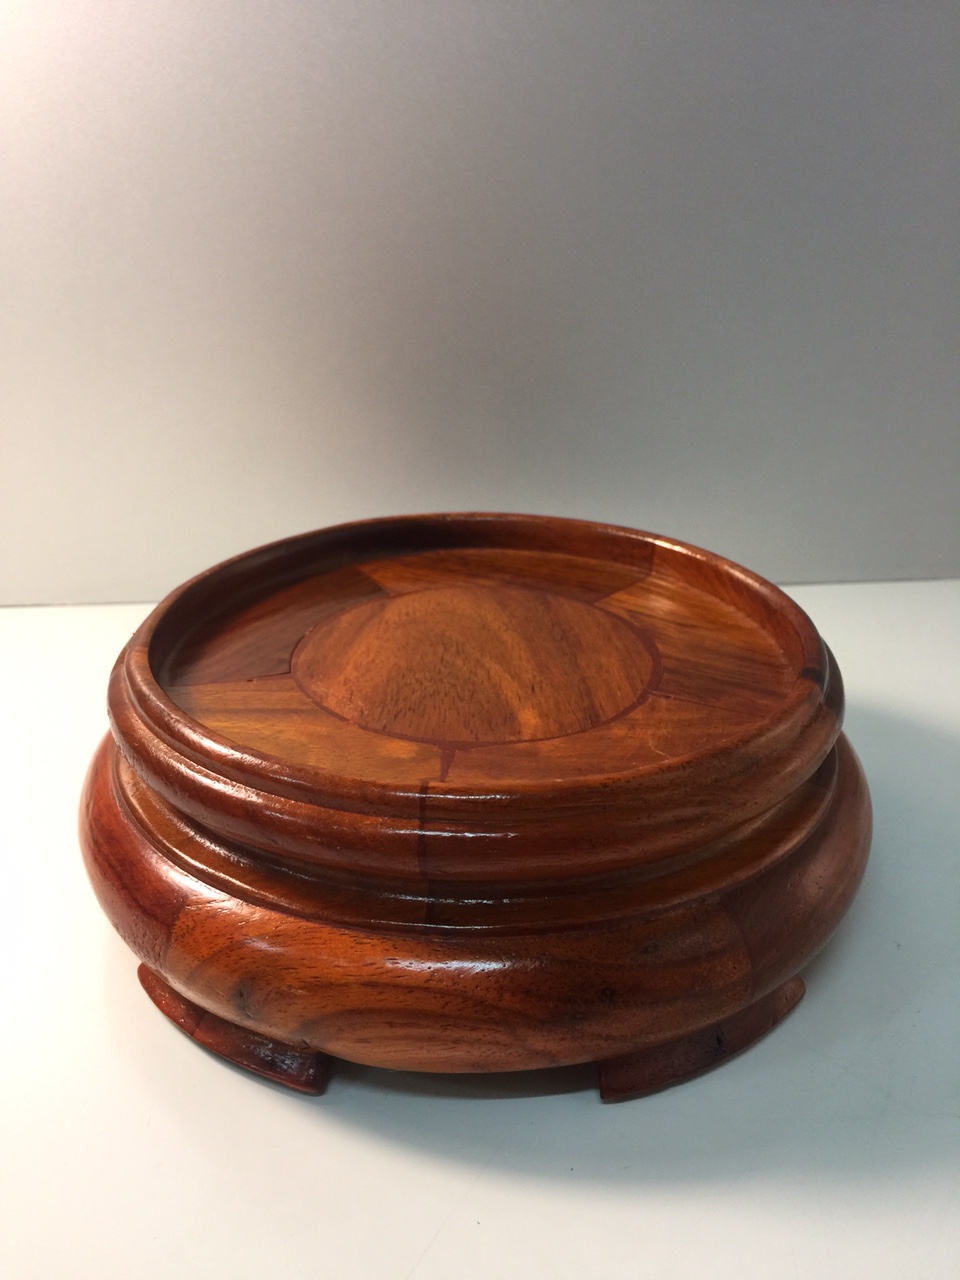 Đế Bát Hương chất liệu gỗ hương (kê bát hương) - 5,5x12 cm